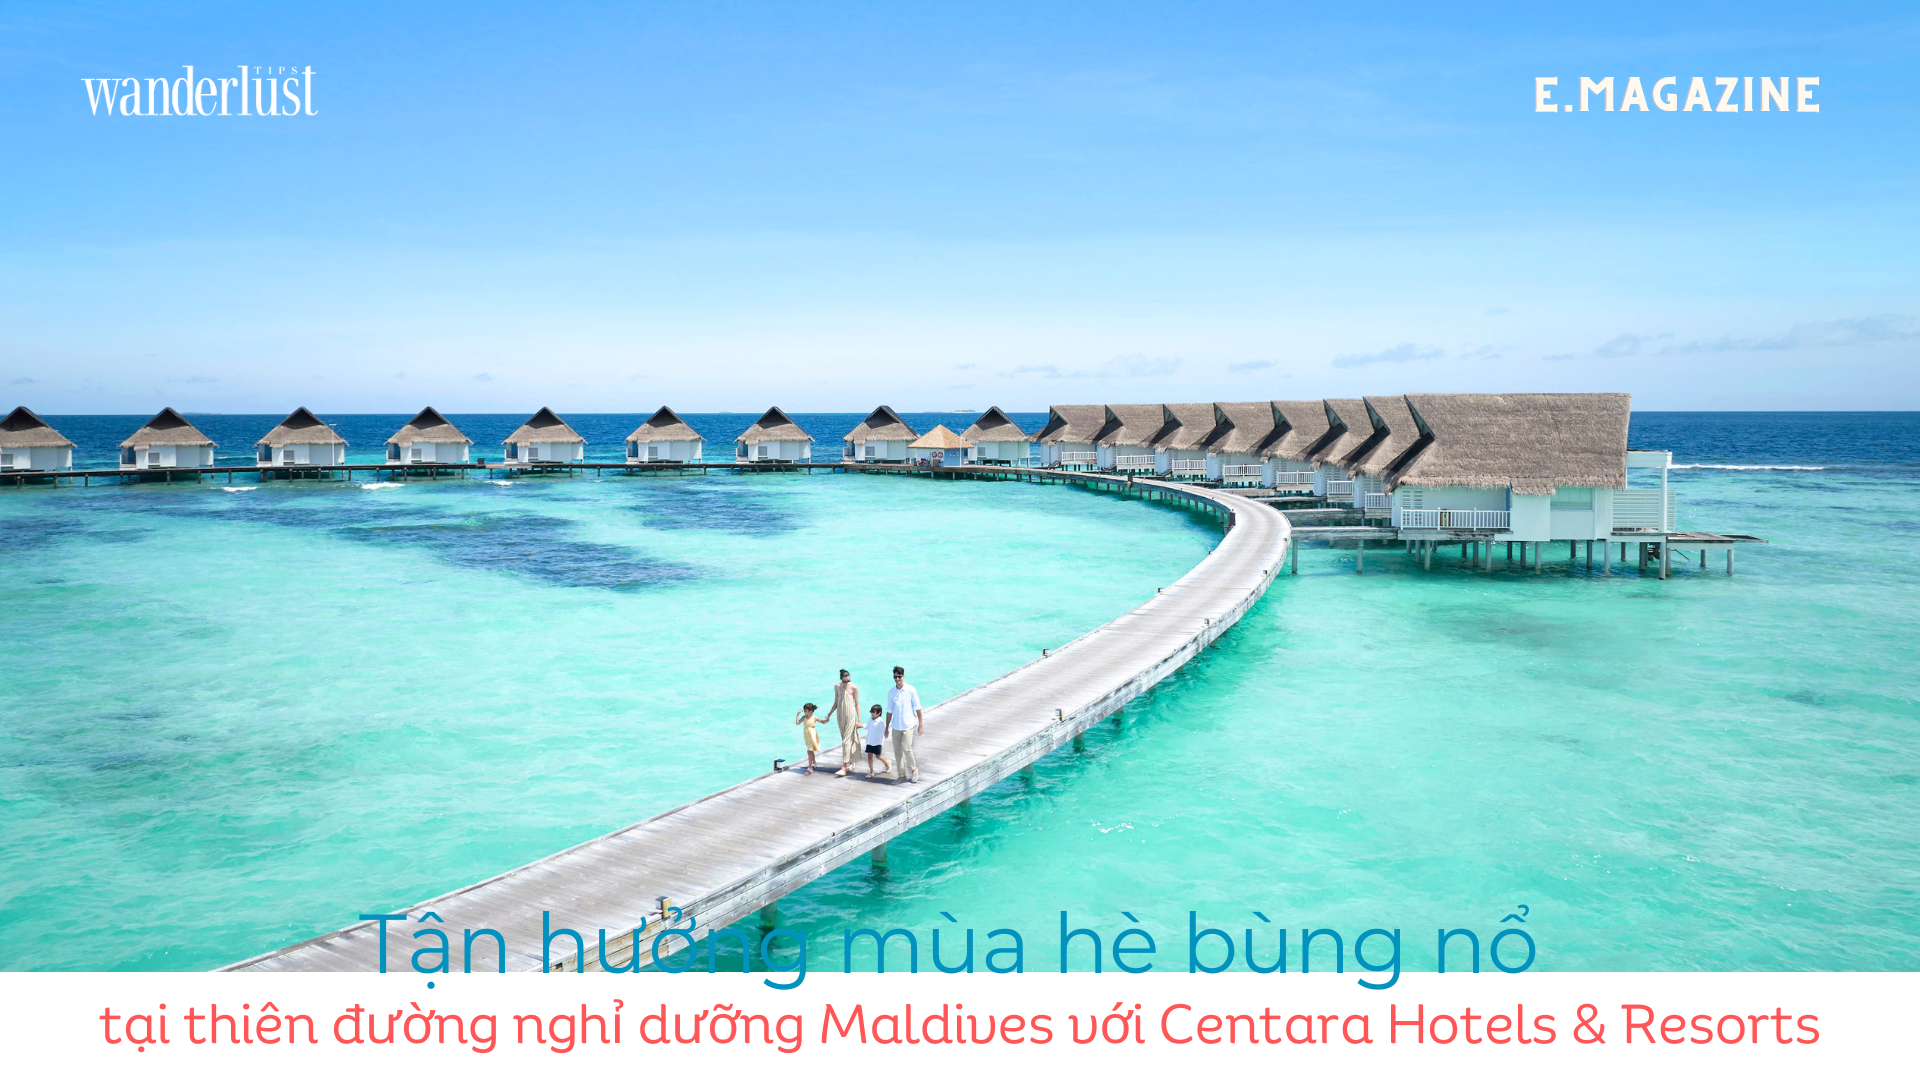 Tận hưởng mùa hè bùng nổ tại thiên dường nghỉ dưỡng Maldives với Centara Hotels Resorts 1